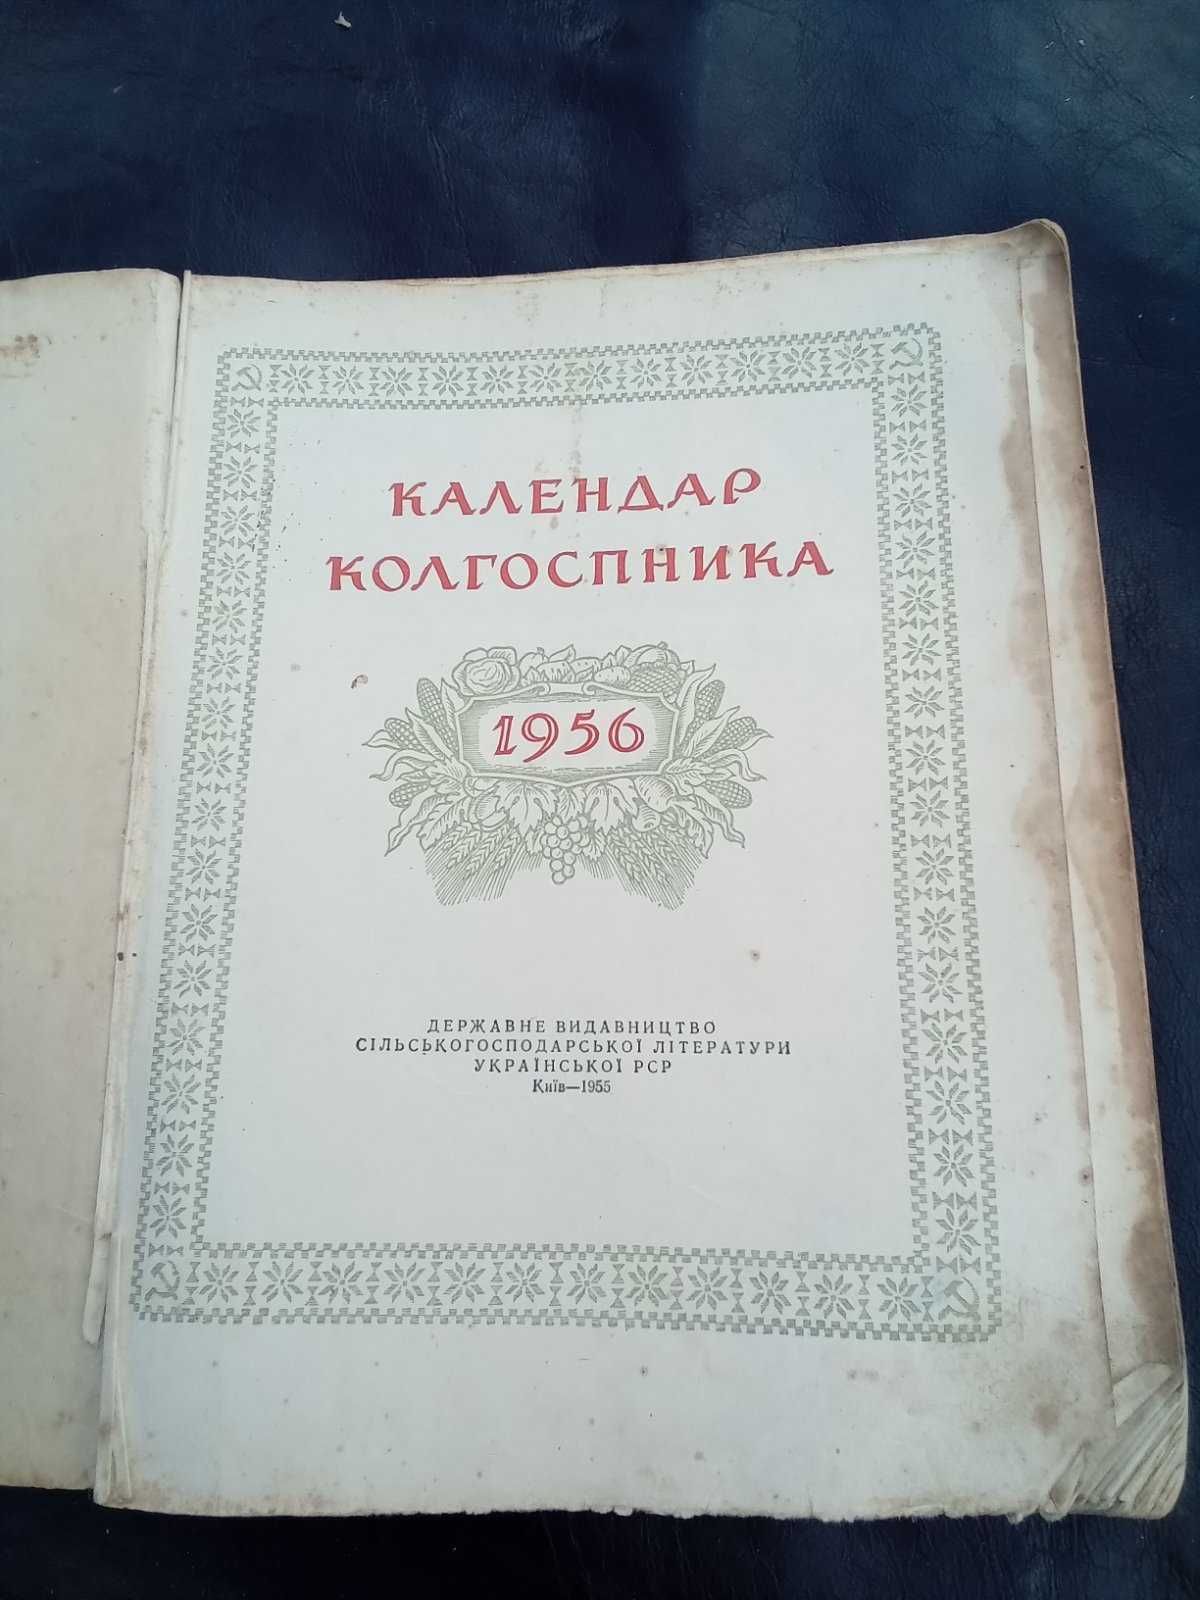 Календар колгоспника 1956 р. видання.